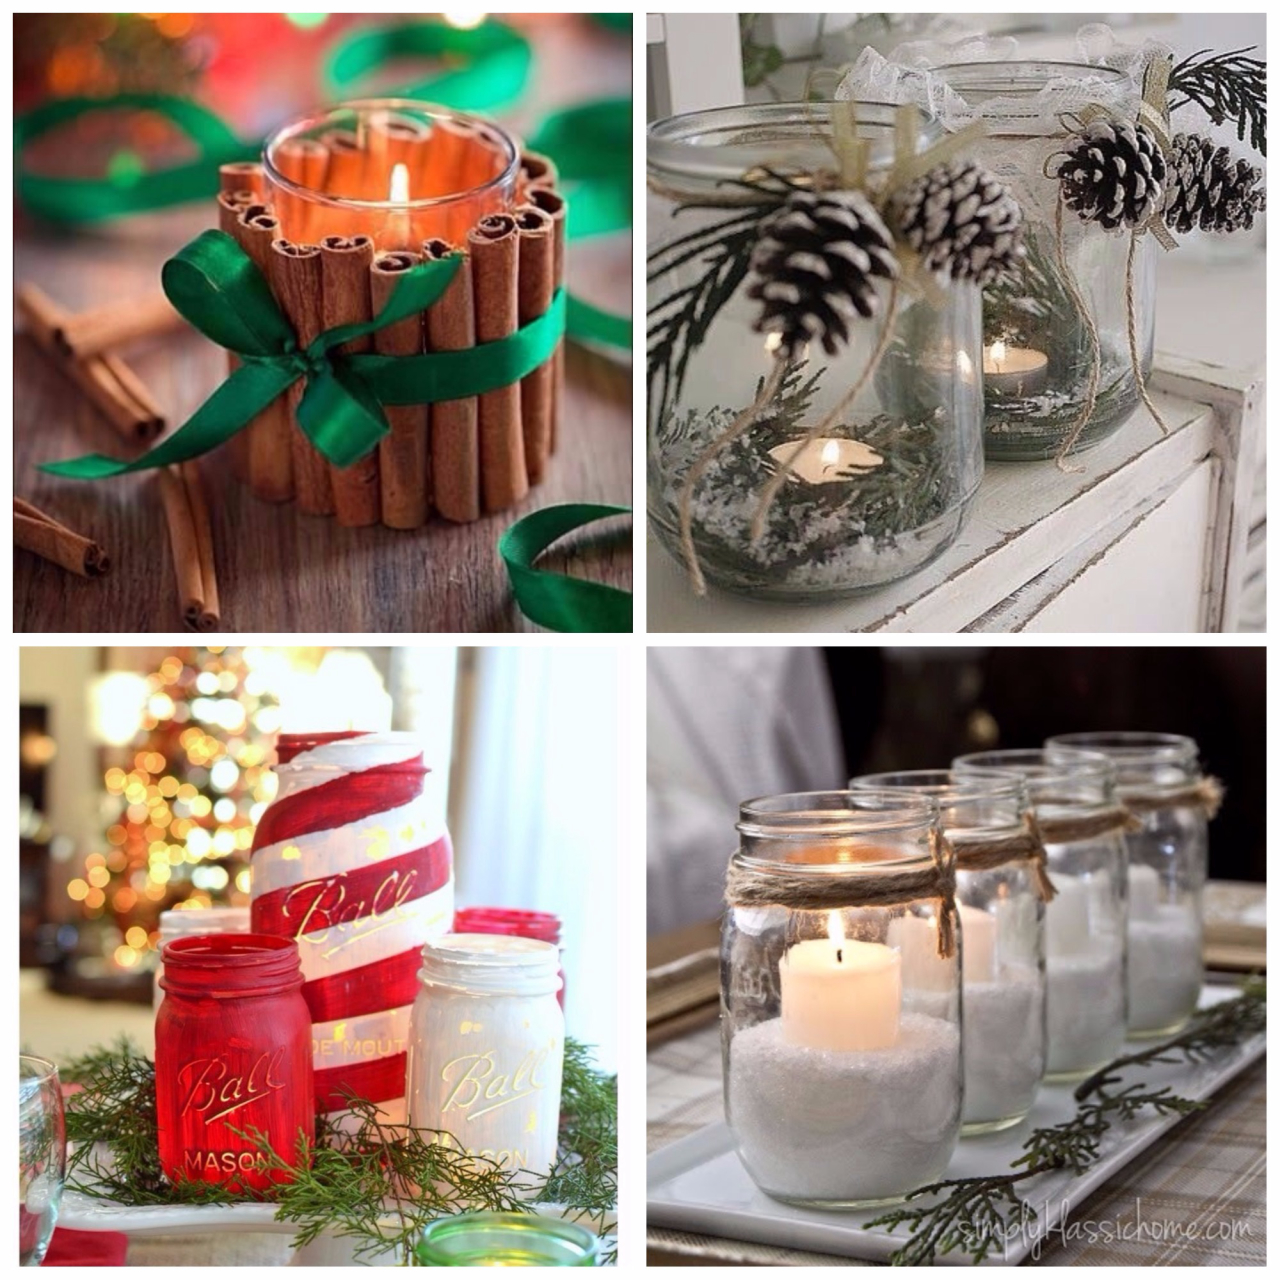 Mesmo um clássico na decoração de Natal, as velas podem ganhar uma apresentação diferente. Seja em recipientes pintados à mão ou em uma composição com canela, ramos ou galhos rústicos. Reprodução/Pinterest